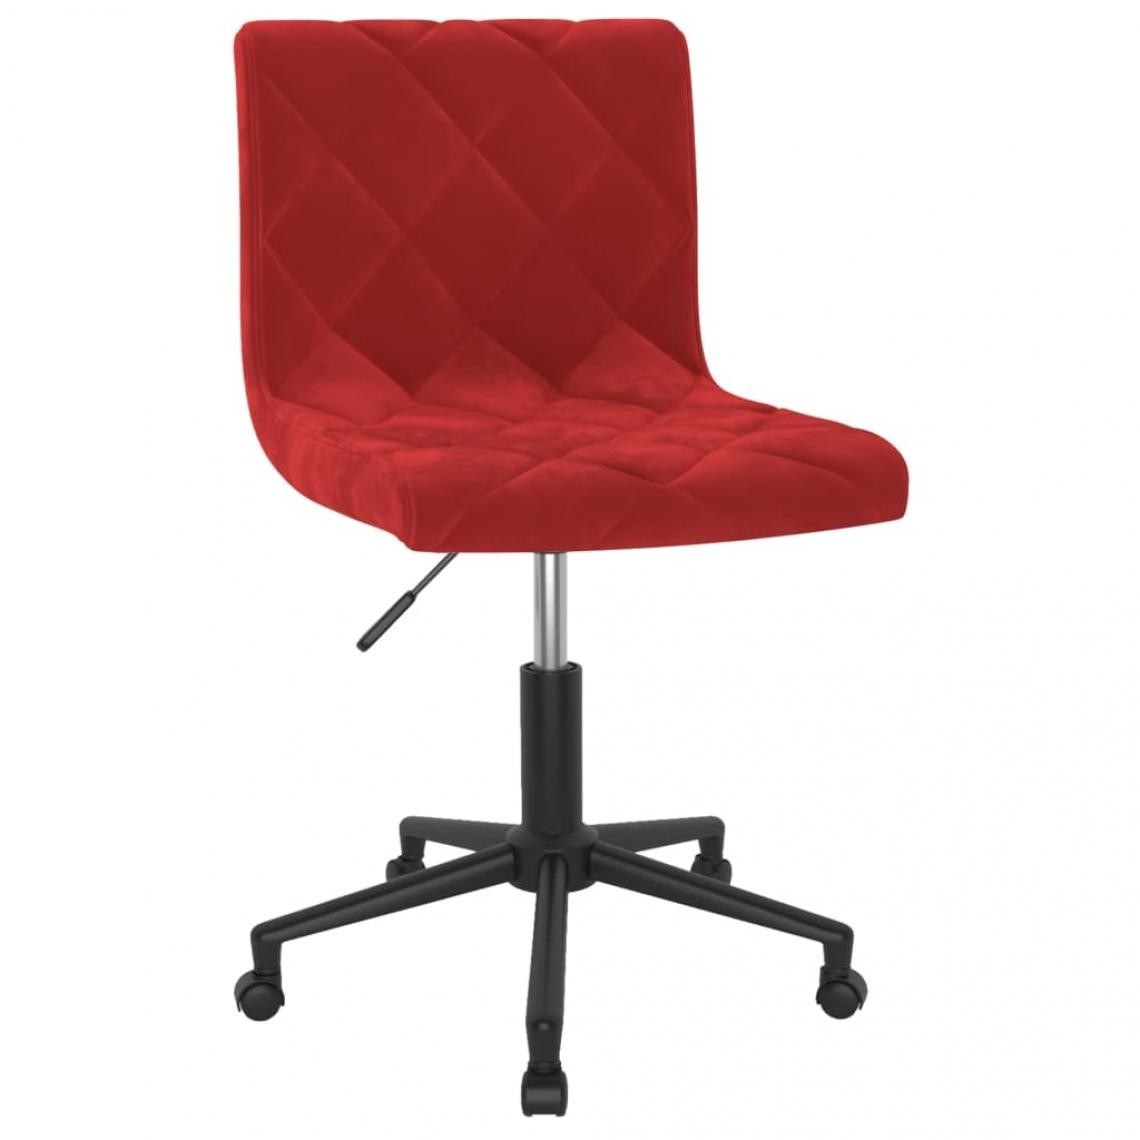 Vidaxl - vidaXL Chaise pivotante de bureau Rouge bordeaux Velours - Bureaux